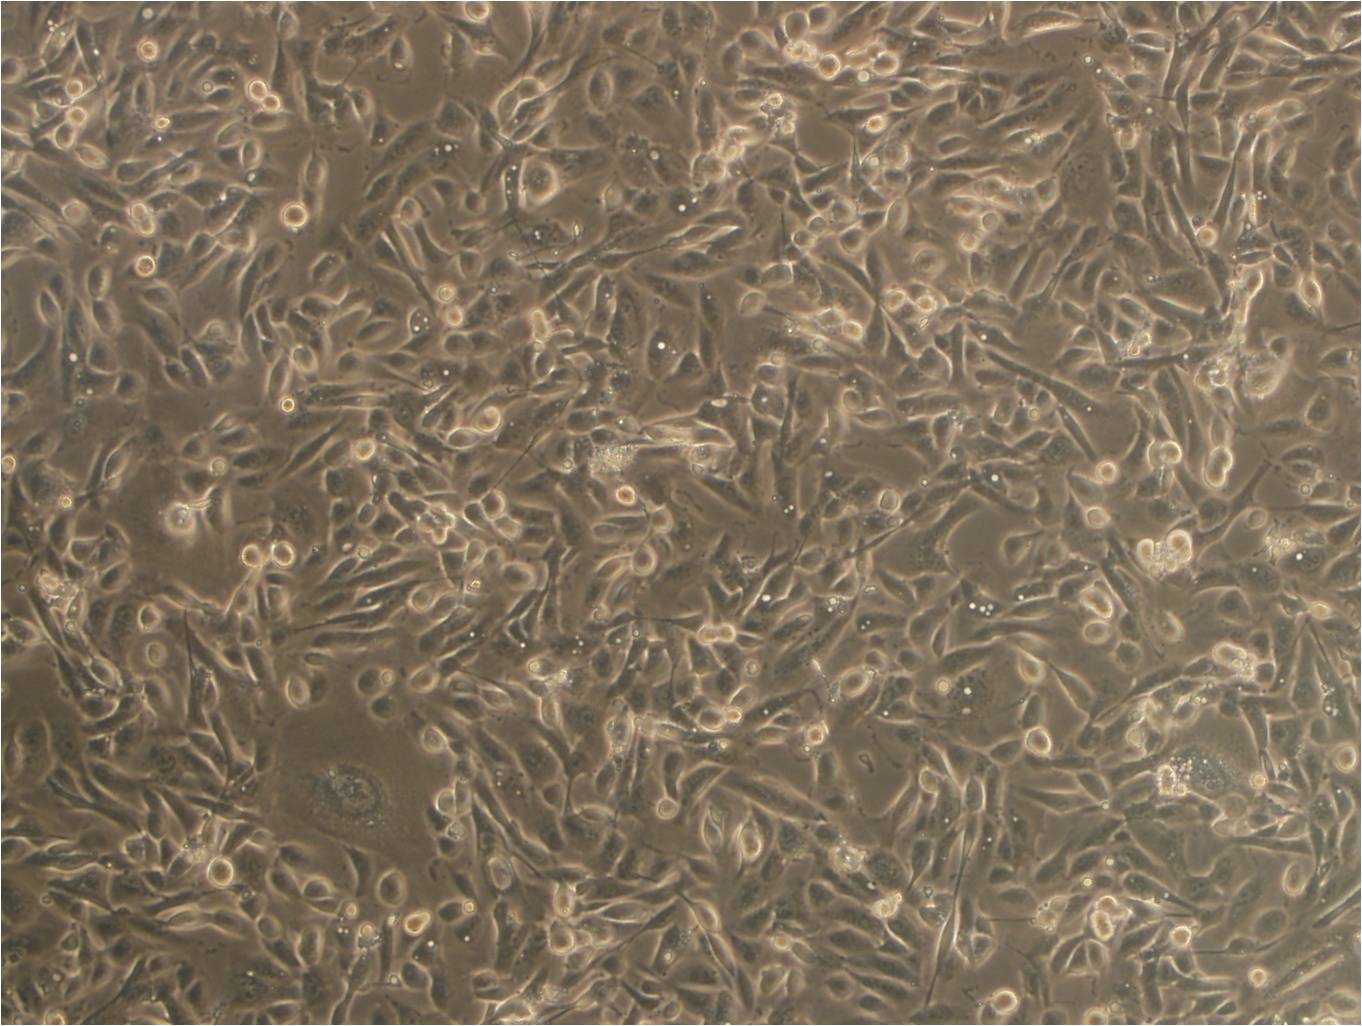 A2780 Cells|人卵巢癌细胞系,A2780 Cells